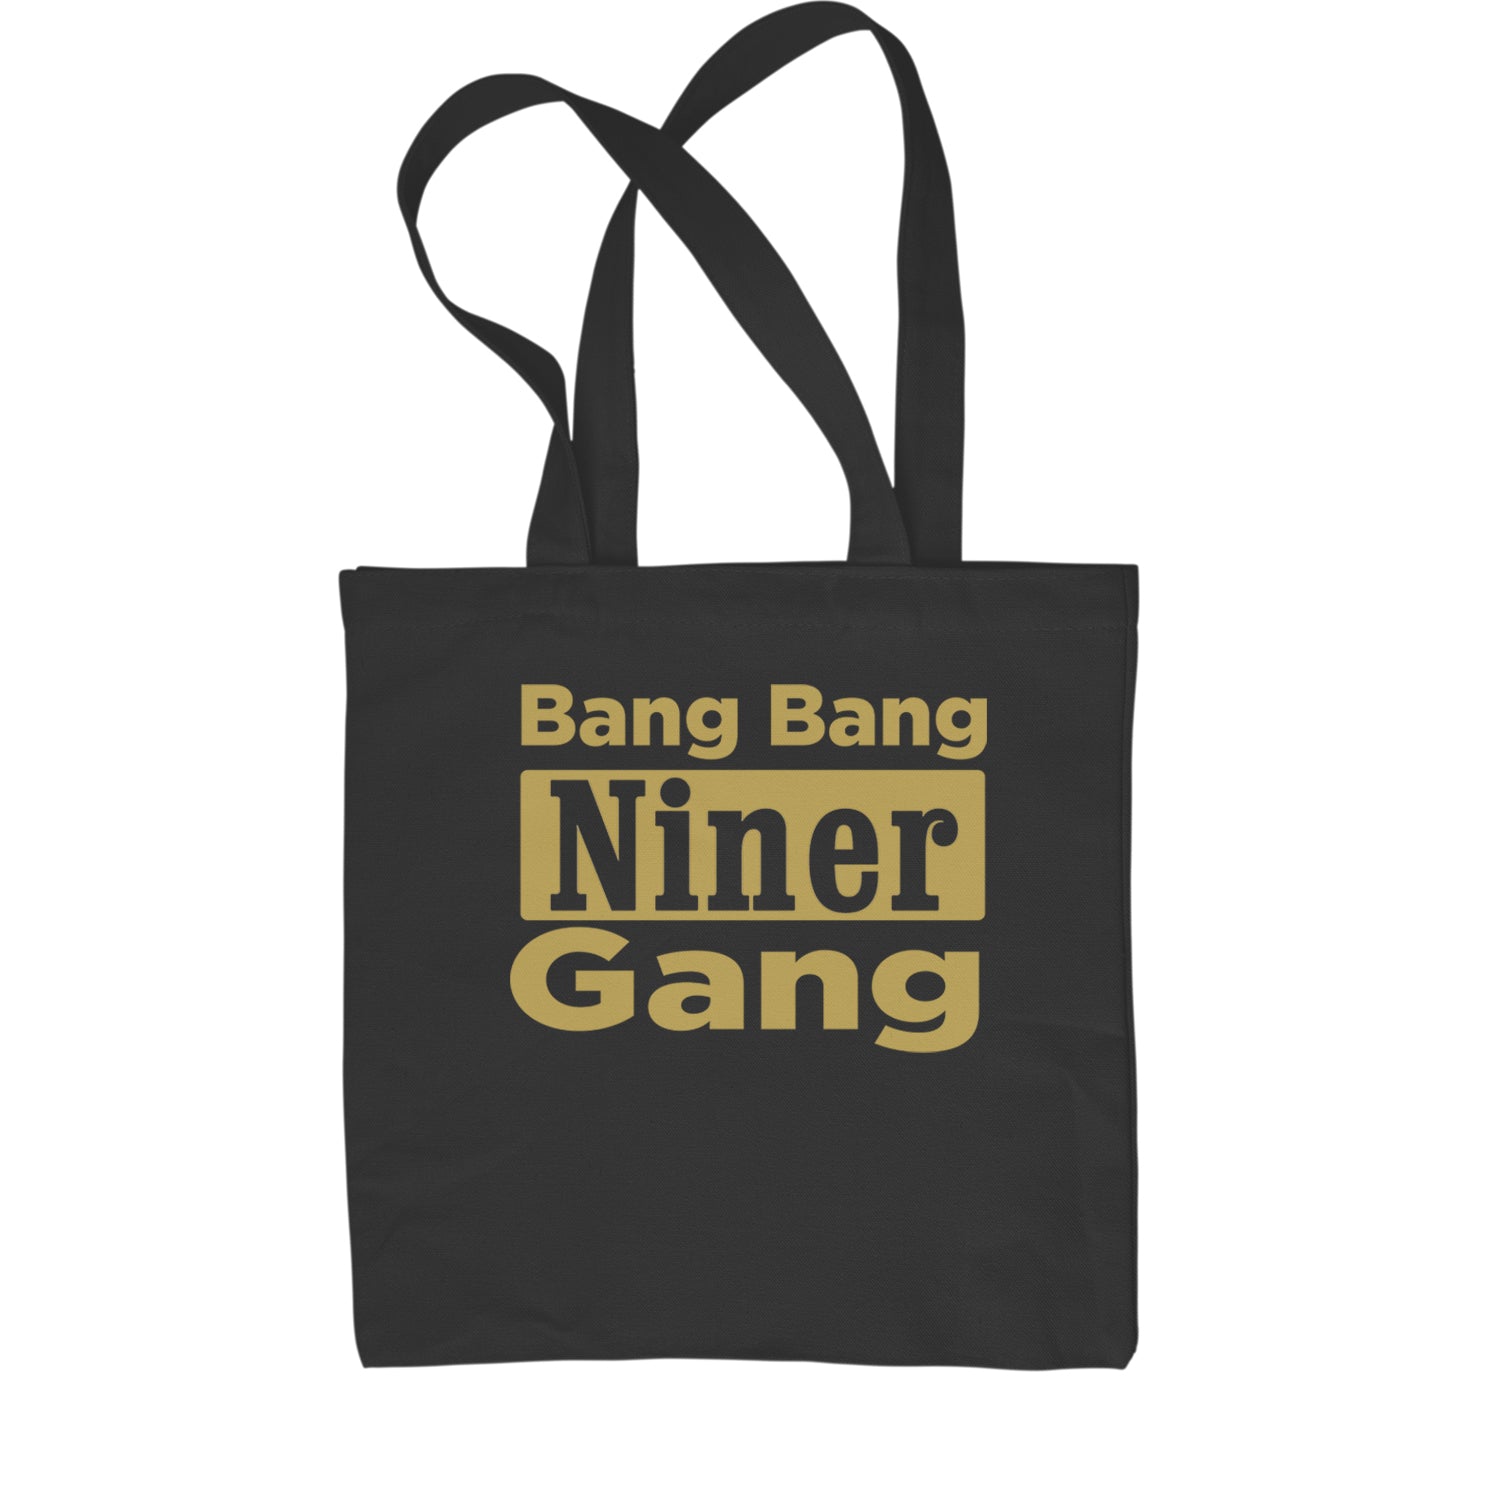 Bang Bang Niner Gang San Francisco Shopping Tote Bag